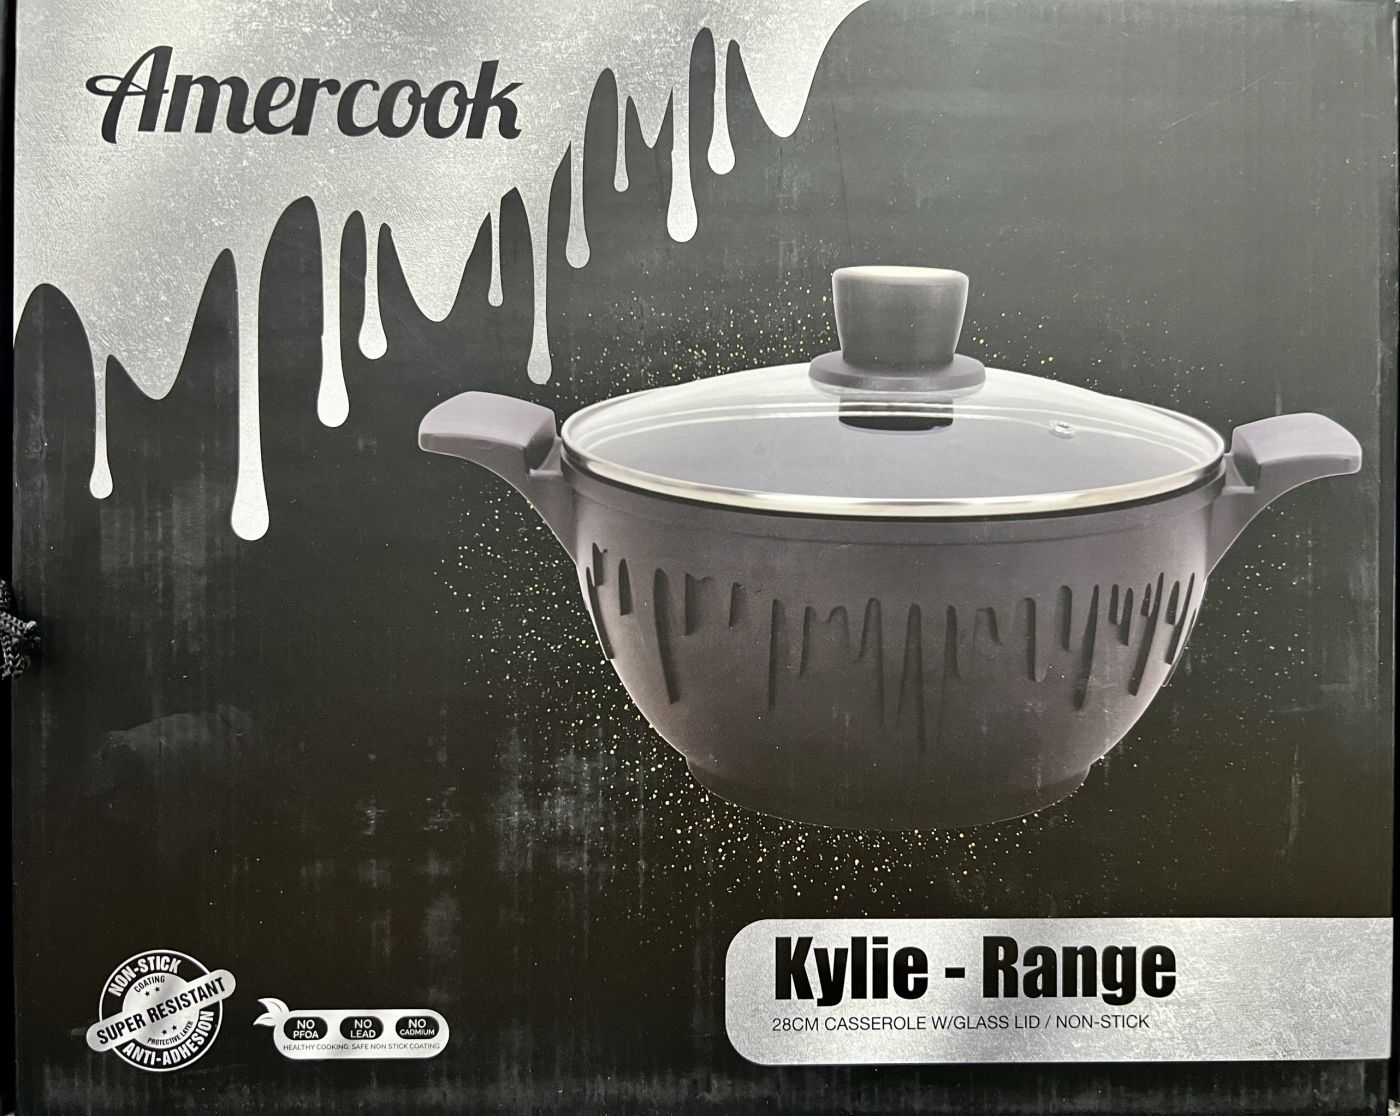 Nồi Amercook Kylie Range 28cm